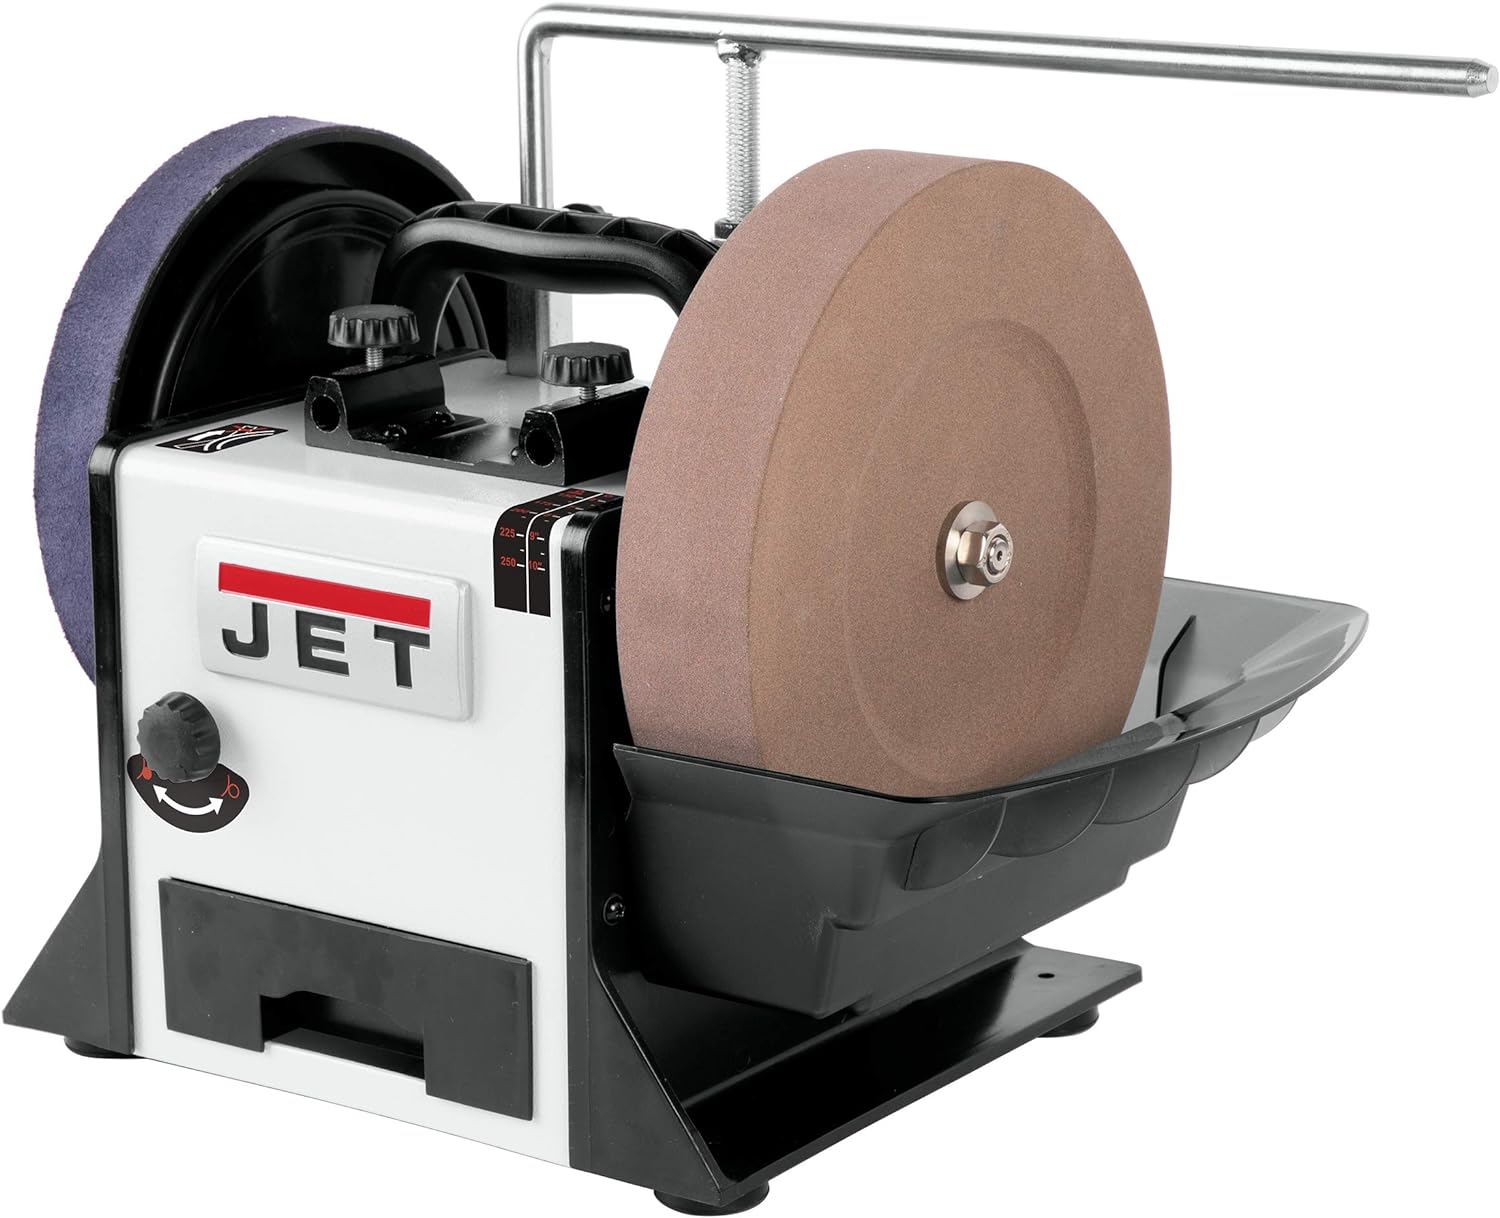 JET 10-Inch Variable-Speed Wet Sharpener, 1Ph 120V (Model JWS-10), White/Black